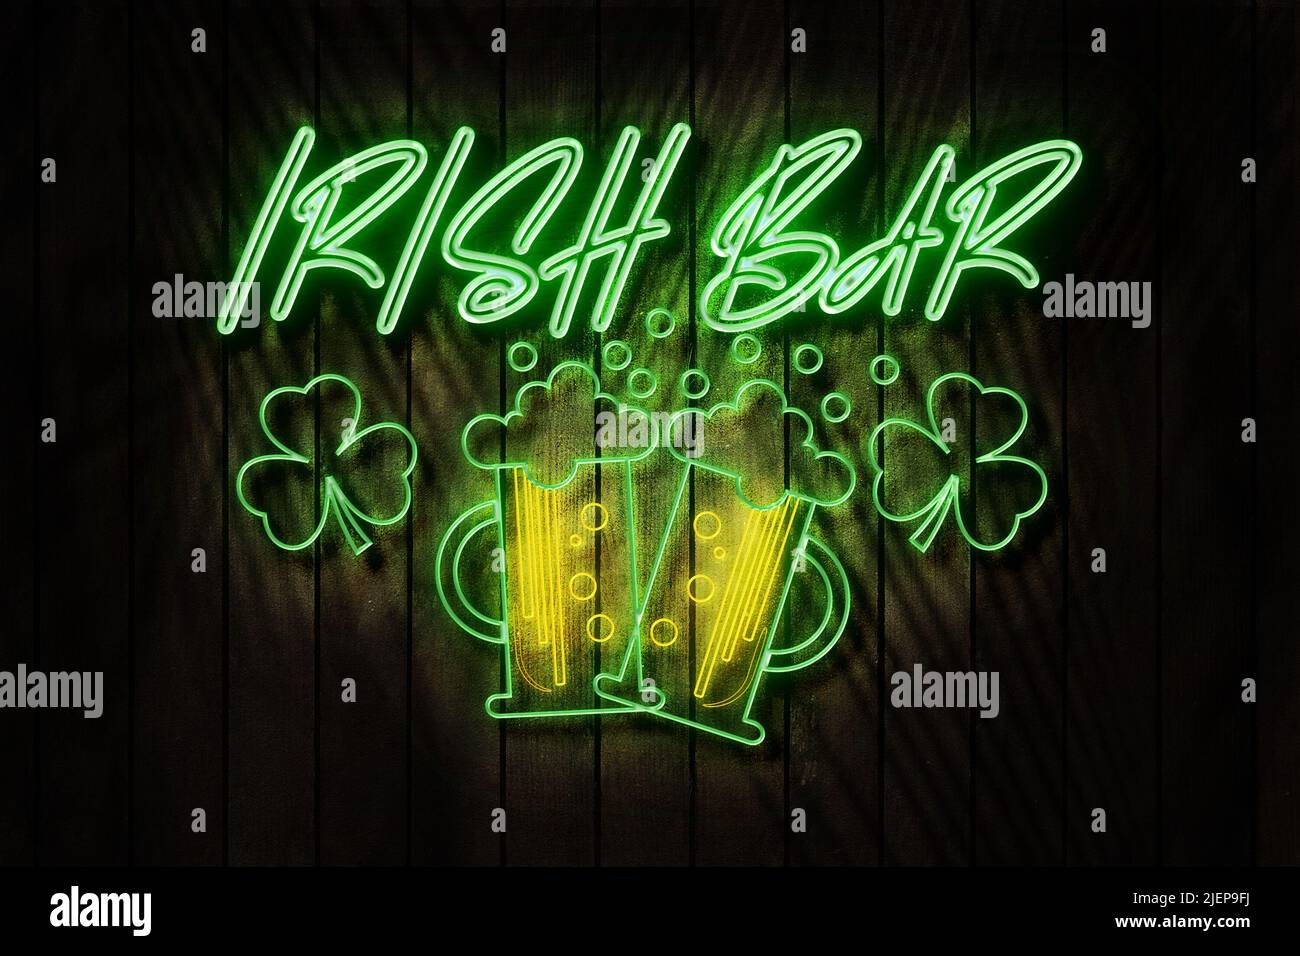 Irish Bar neon sign on a Dark Wooden Wall 3D illustration. Stock Photo